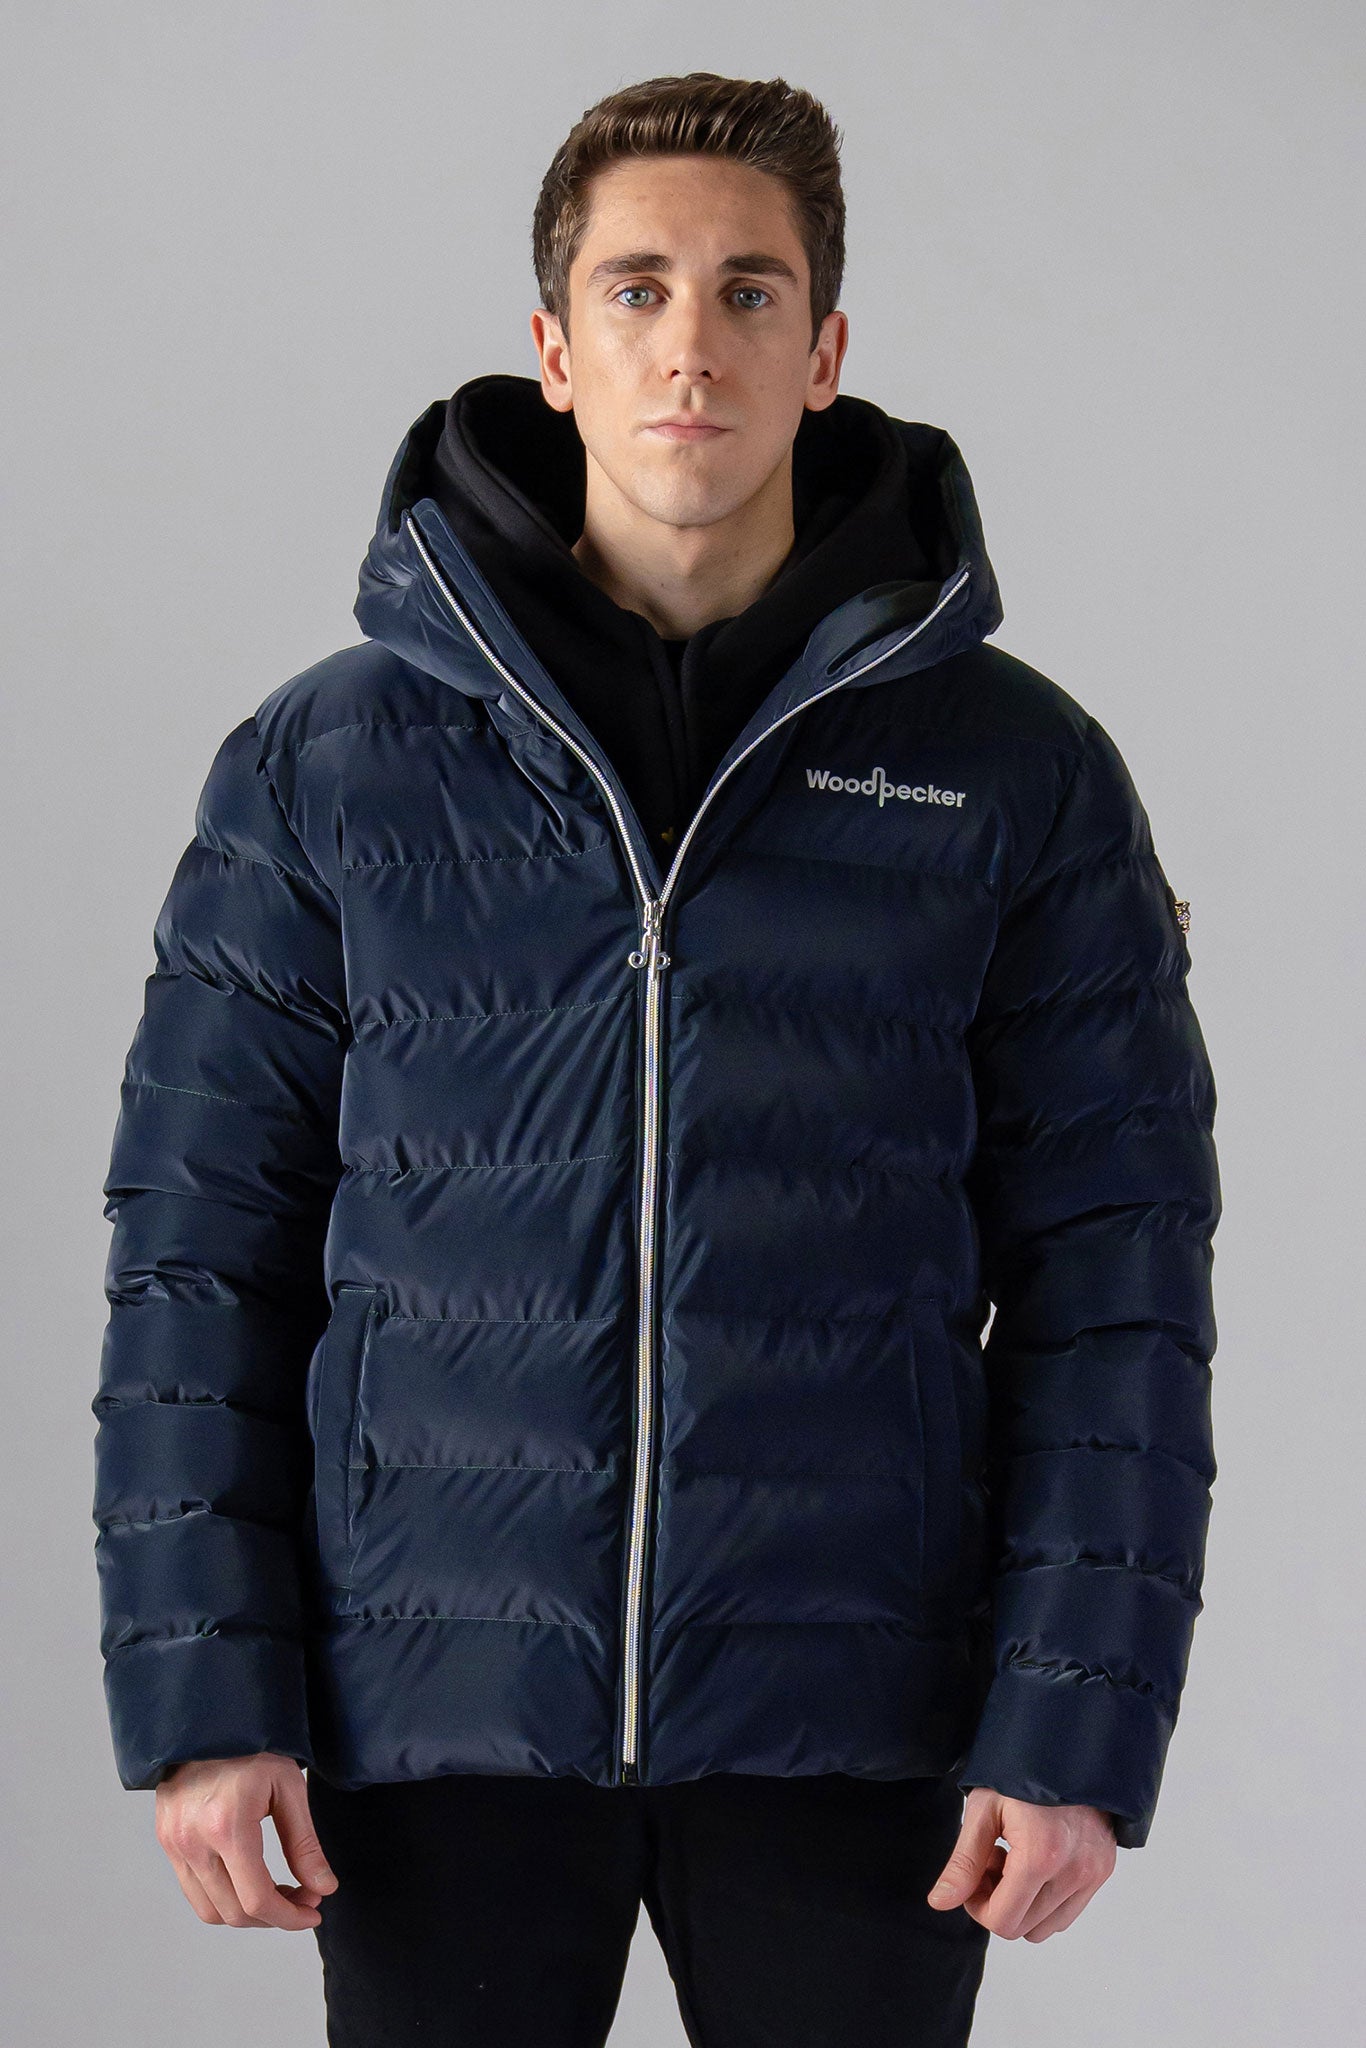 Woodpecker Men's Sparrow Winter coat. High-end Canadian designer winter coat for men in 